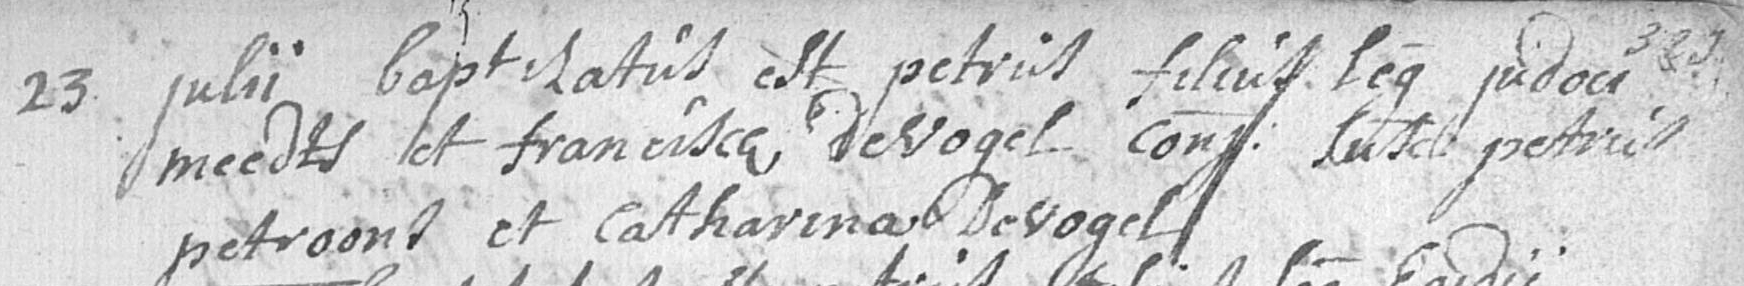 1760-PetrusMeerts23Jul1760JudocusMeertsFranciscadeVogel.jpg